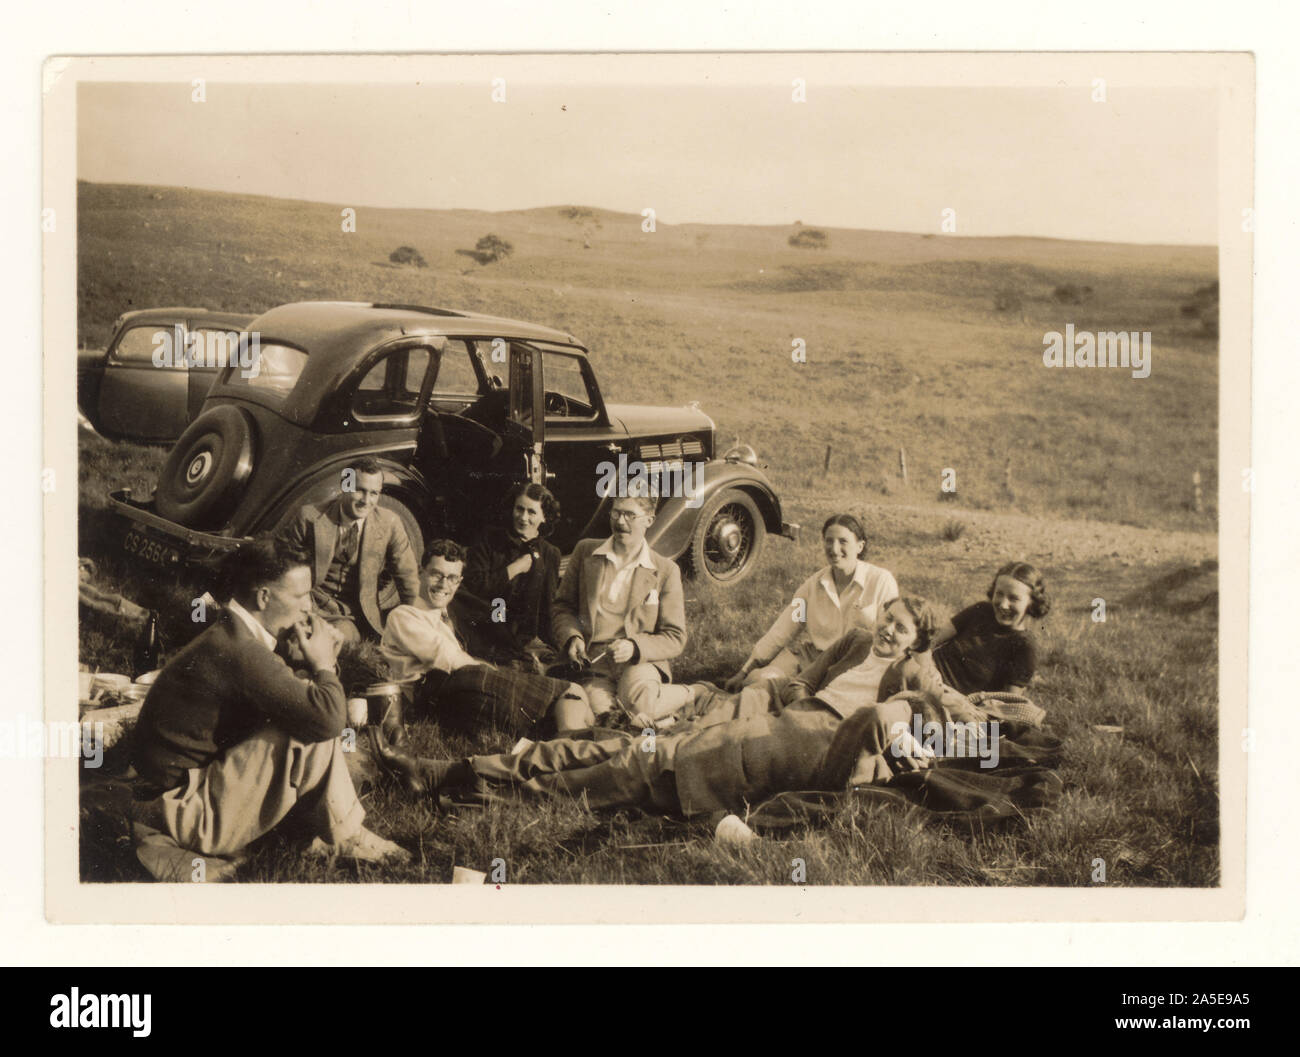 Foto aus dem frühen 20. Jahrhundert von einer Gruppe von Freunden, die ein Picknick neben einem Oldtimer machen, in Moorlandschaft, ca. Mitte der 30er Jahre, Ayrshire, Schottland, Großbritannien Stockfoto